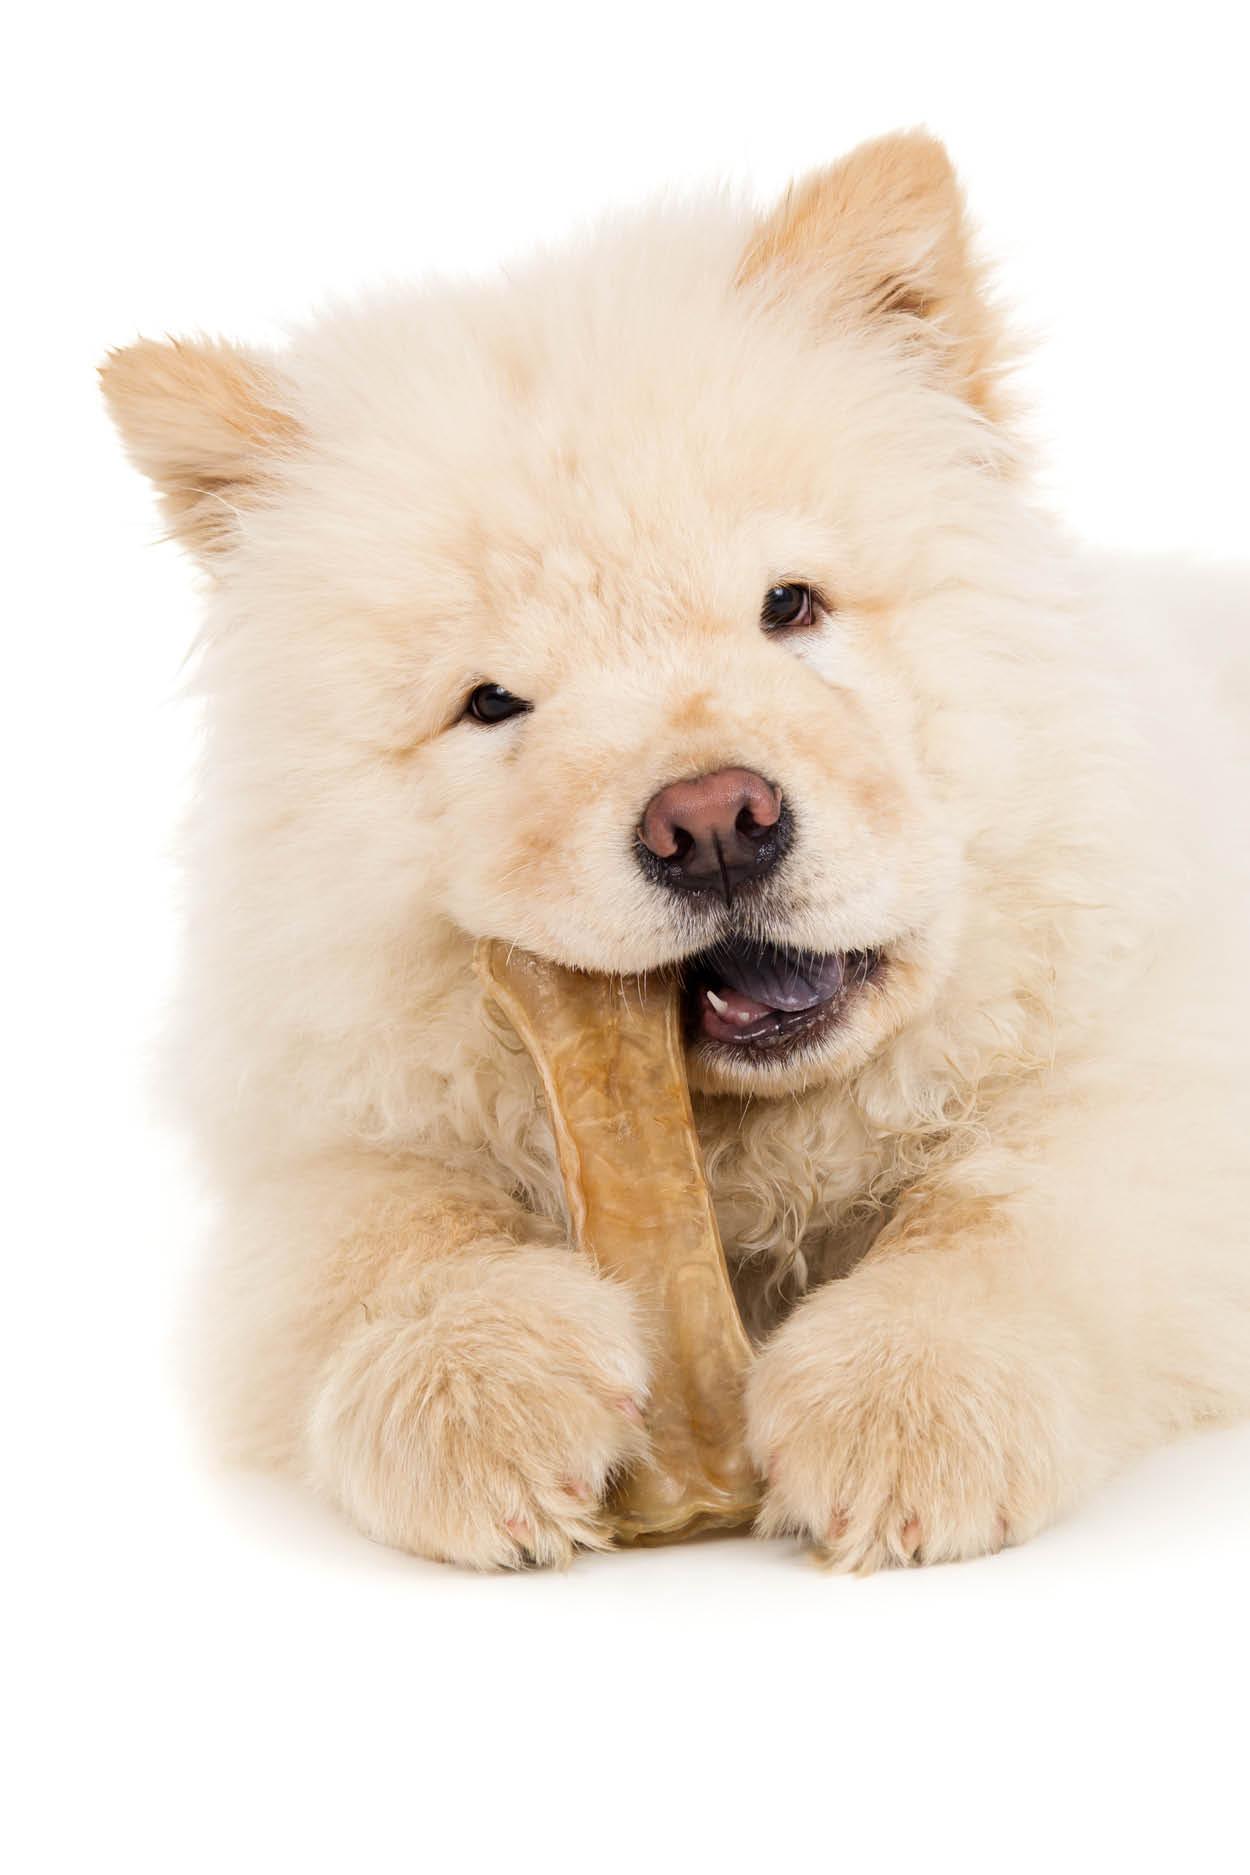 eindpunt stuiten op Ontwijken De beste kauwbotten speciaal voor honden | Antos® Hondensnacks